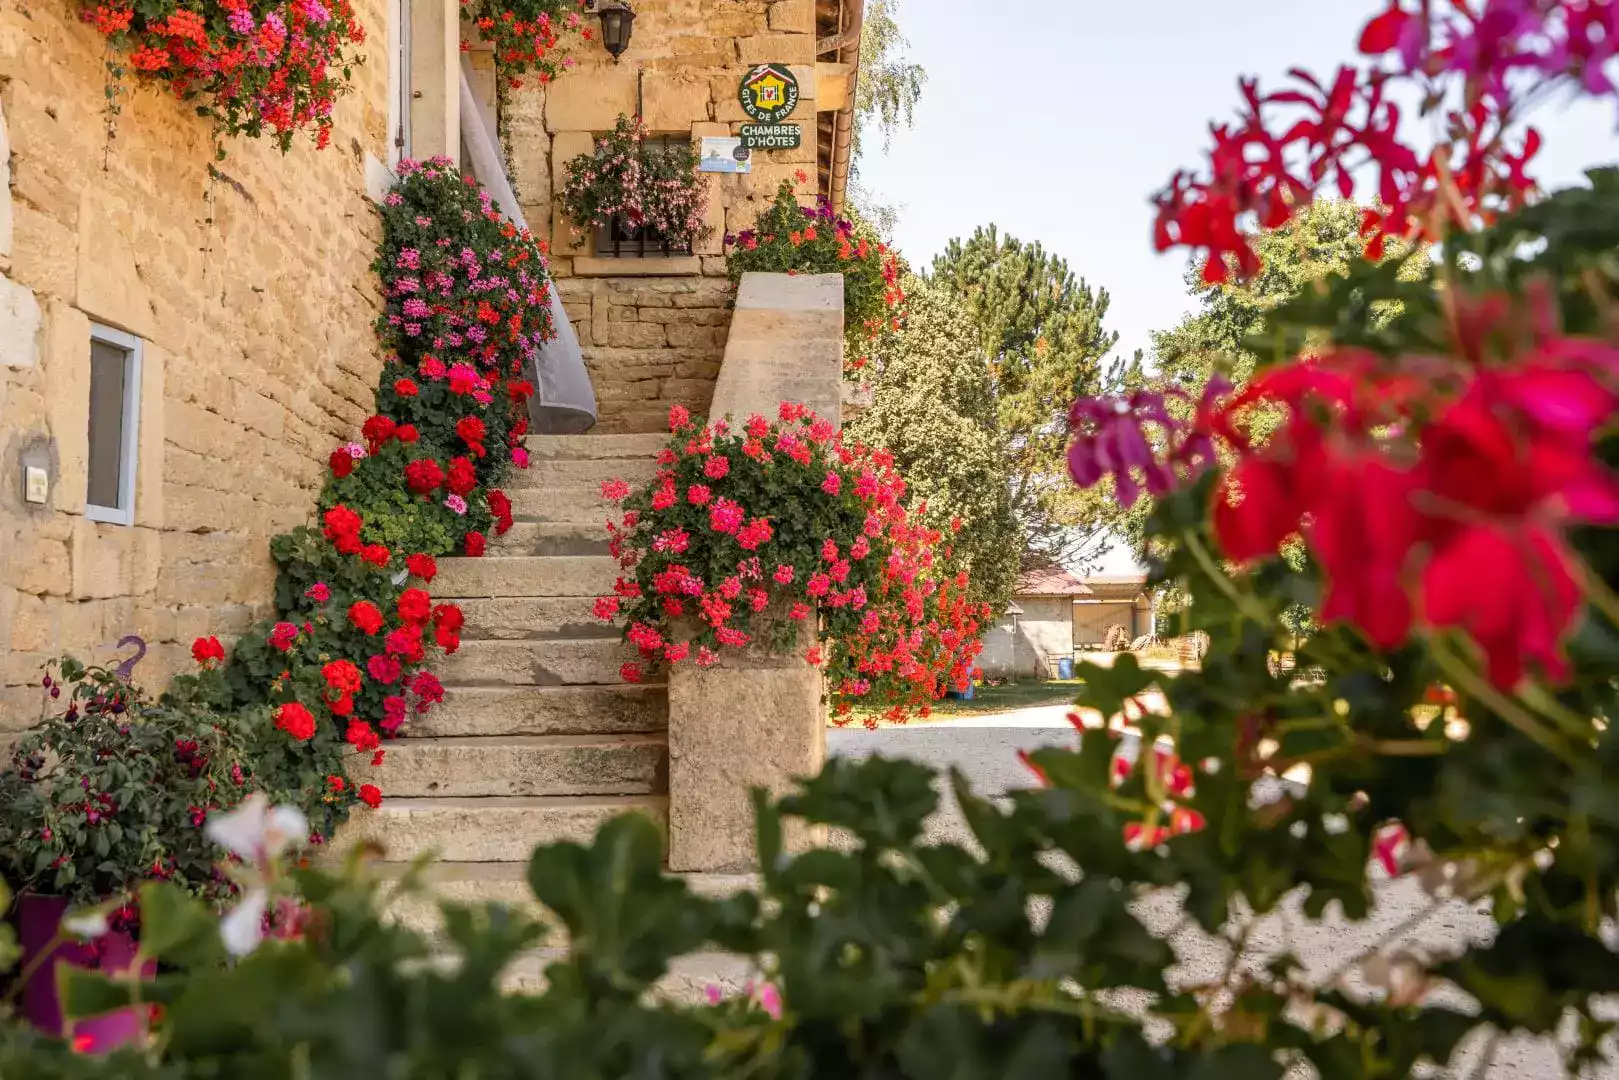 Entrée fleurie de la chambre d'hôtes L'agnoblens avec des escaliers en pierre et des pots de géraniums rouges